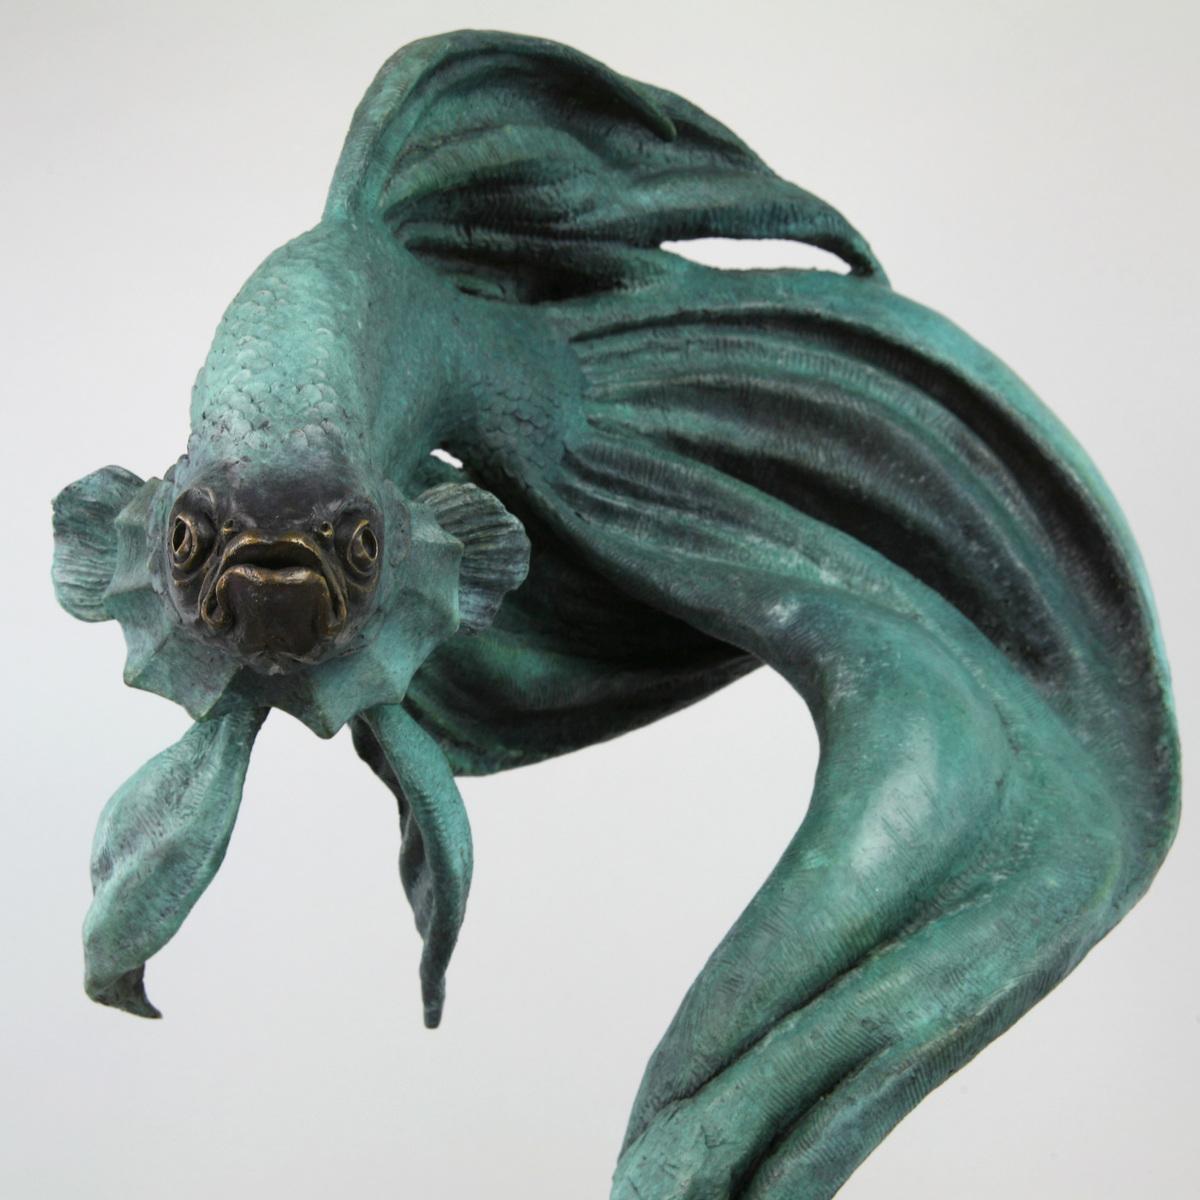 Siamese Fighter Fish-original bronze wildlife sculpture-artwork-contemporary art - Realist Sculpture by Andrzej Szymczyk